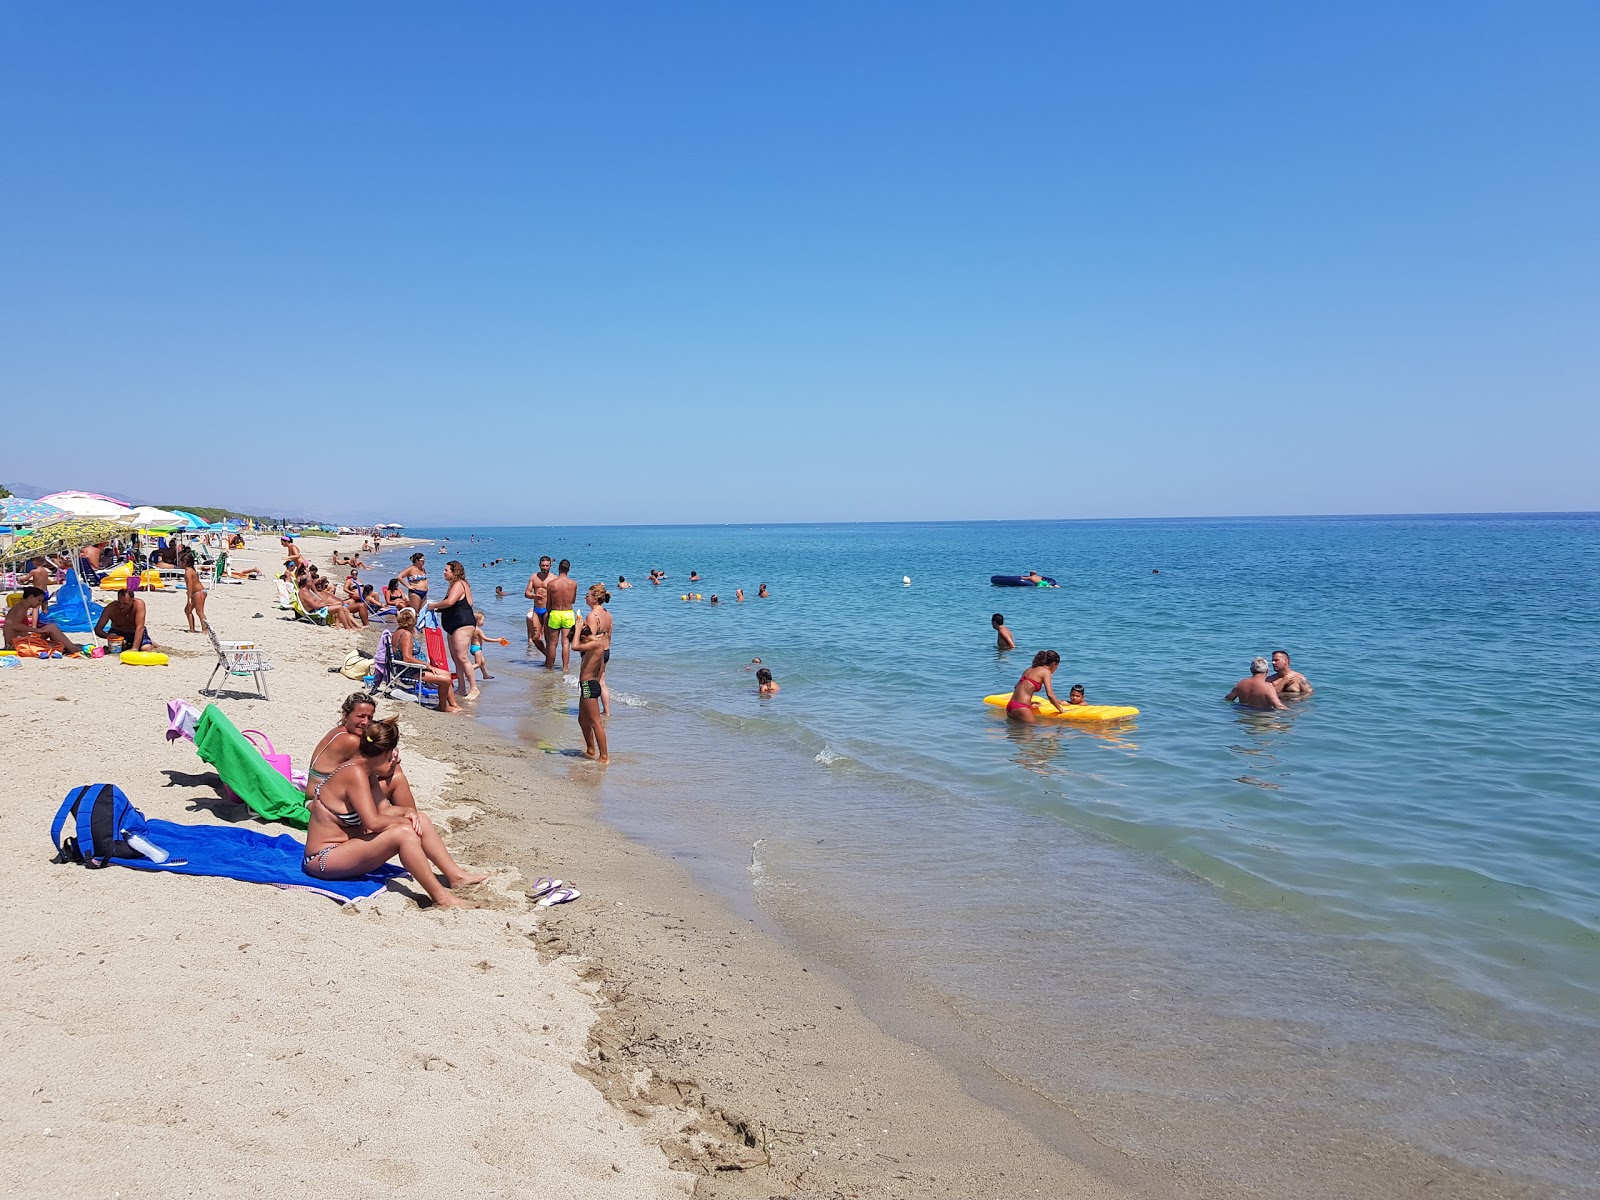 Salicetti Plajı'in fotoğrafı geniş plaj ile birlikte